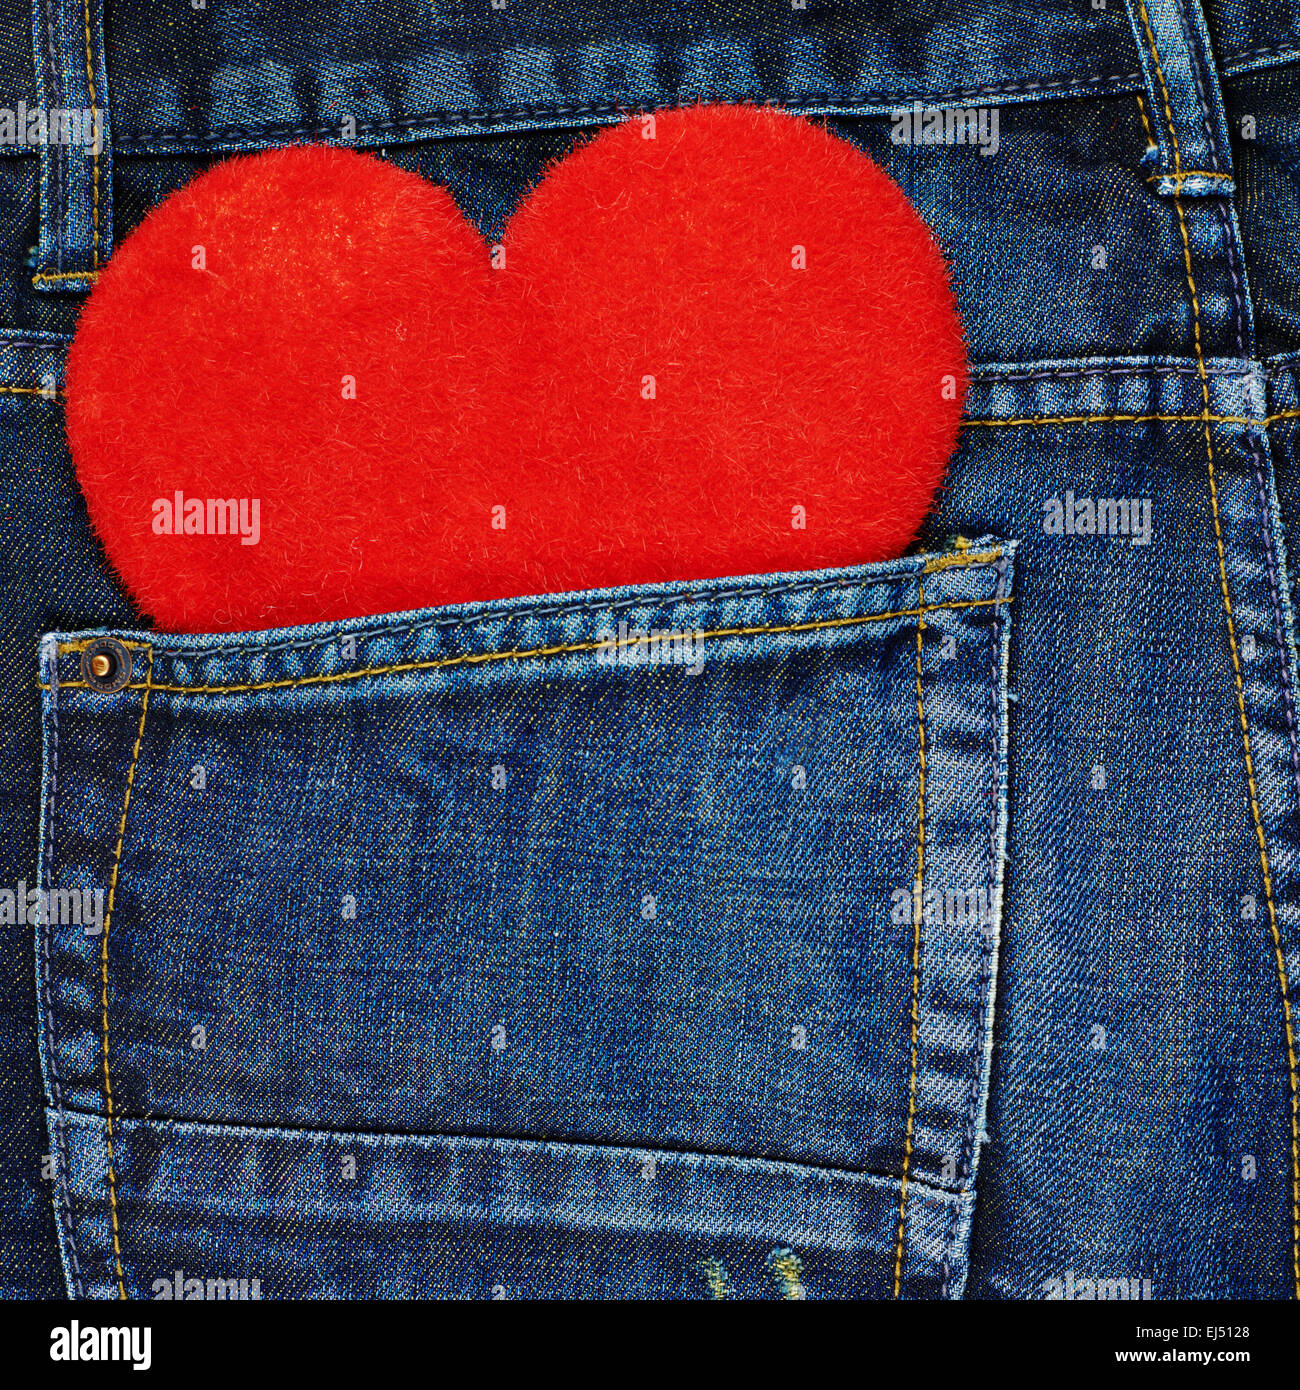 Rotes Herz in eine Gesäßtasche der jeans Stockfotografie - Alamy